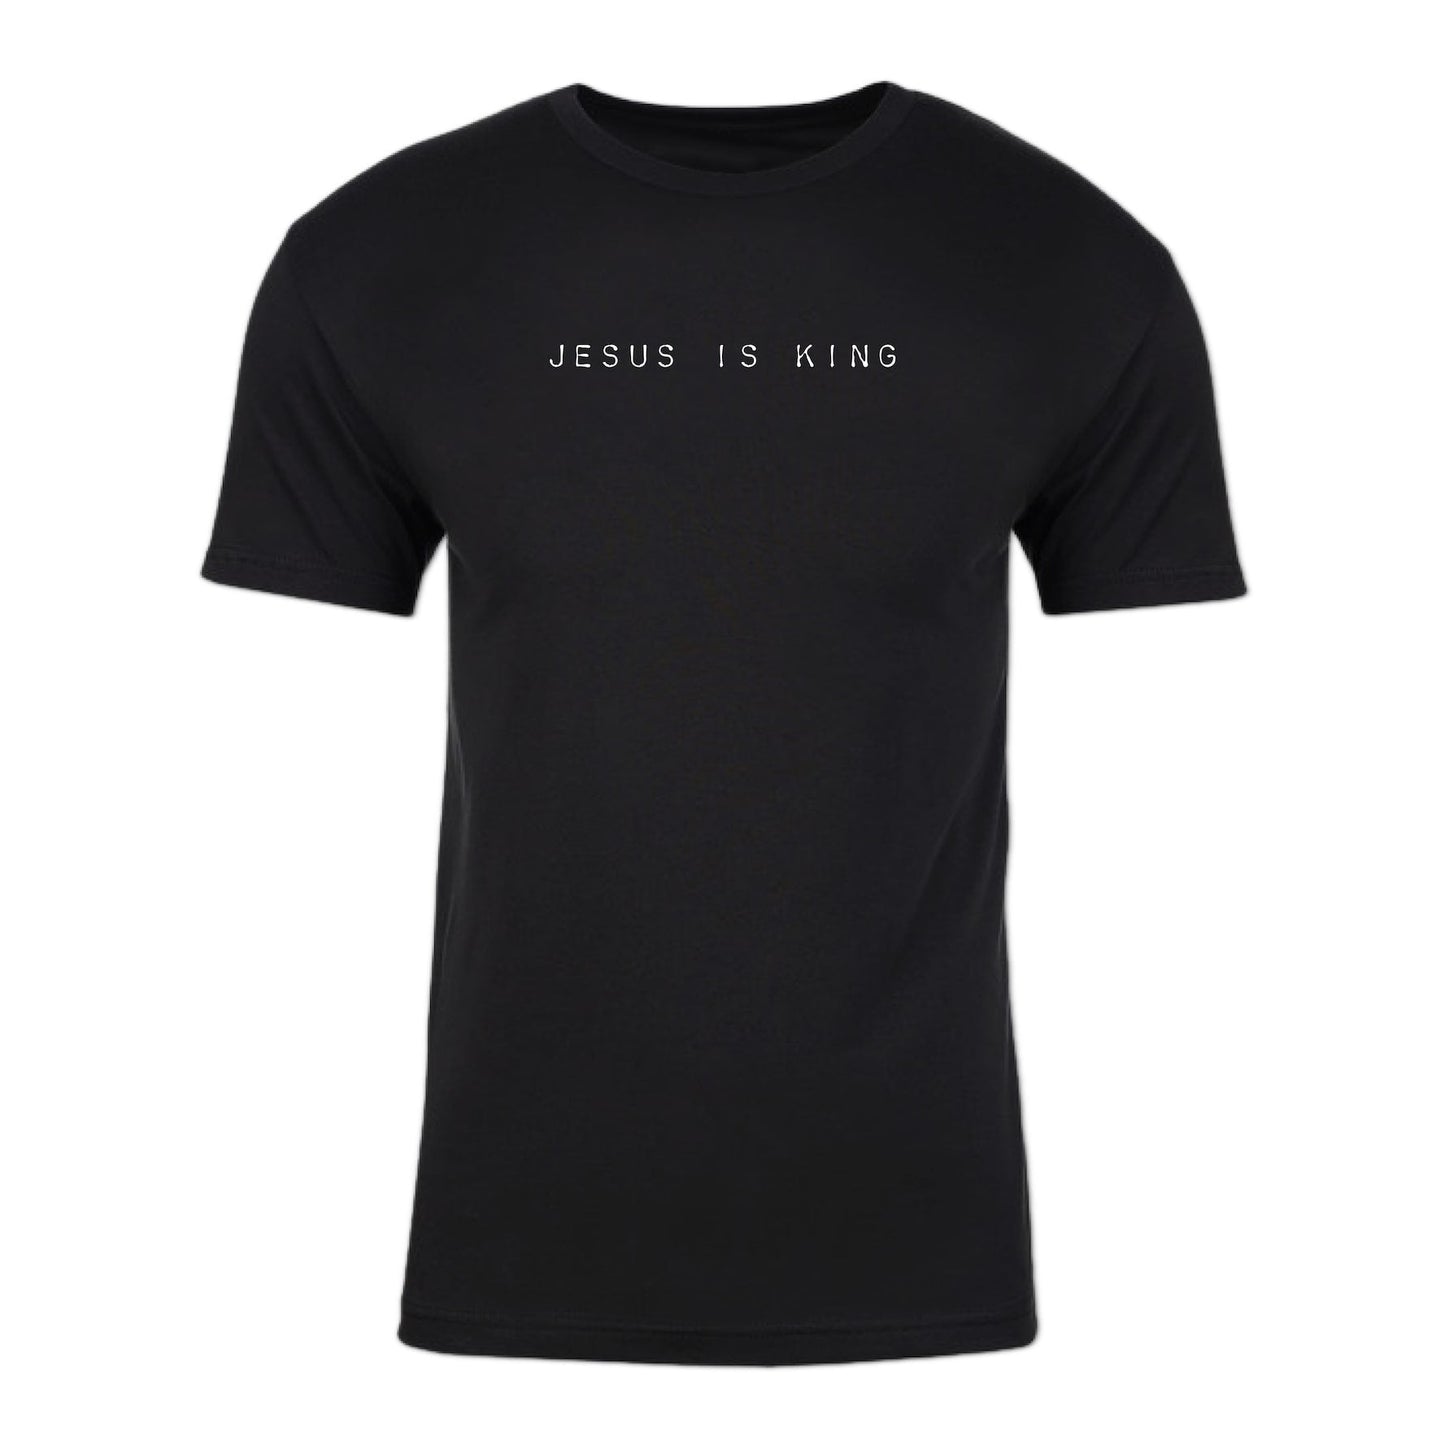 JESUS IS KING: Minimalist Tee